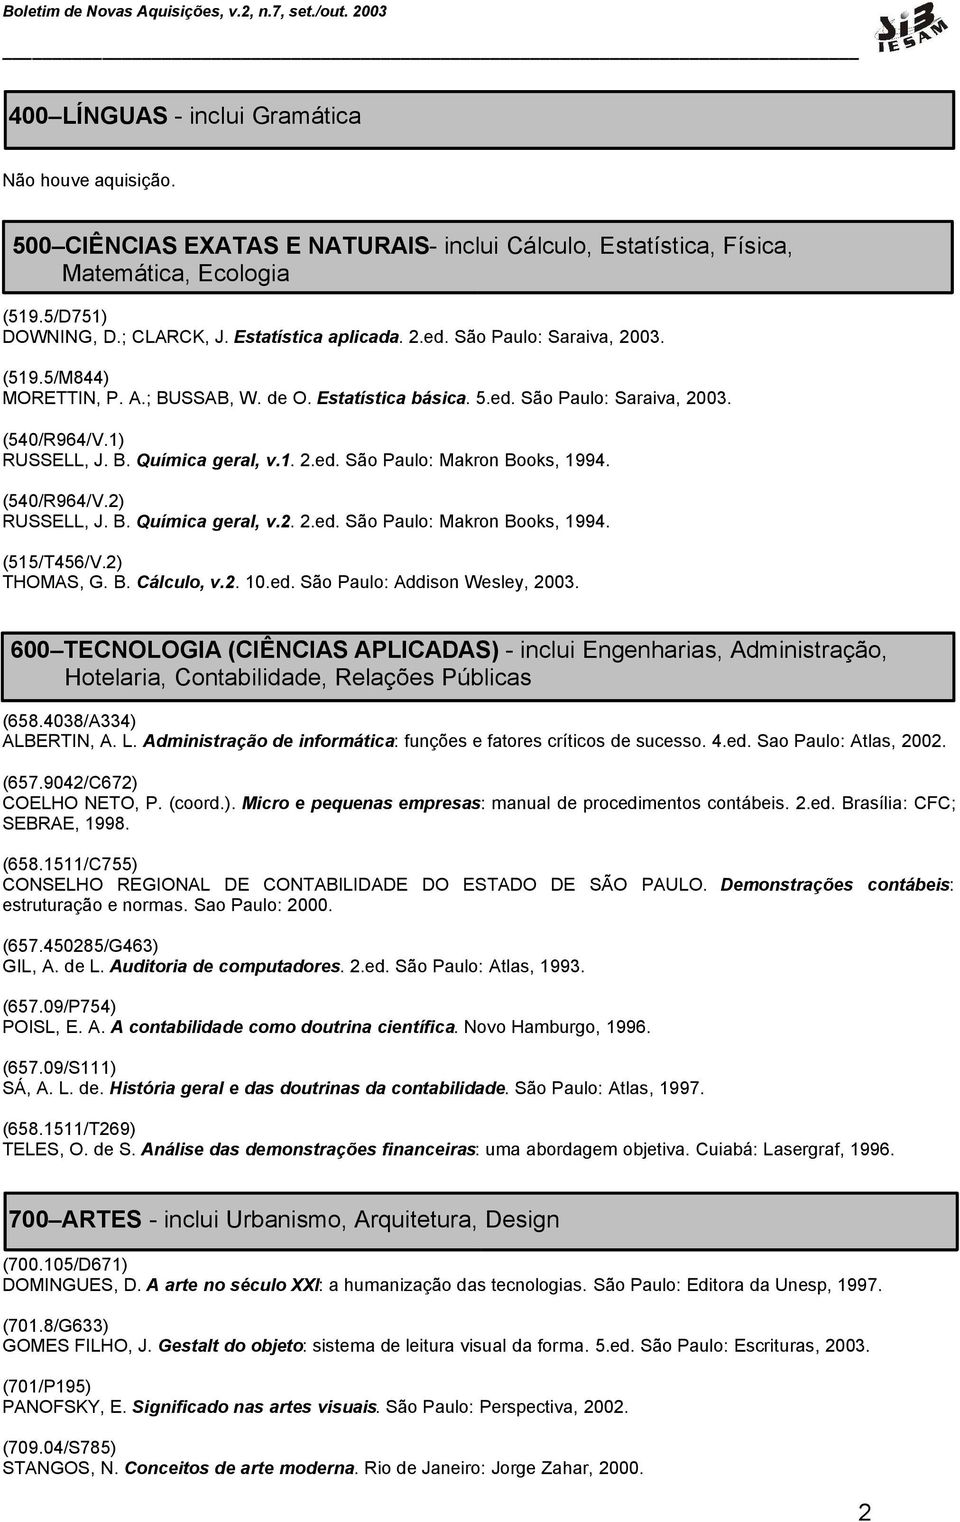 (540/R964/V.2) RUSSELL, J. B. Química geral, v.2. 2.ed. São Paulo: Makron Books, 1994. (515/T456/V.2) THOMAS, G. B. Cálculo, v.2. 10.ed. São Paulo: Addison Wesley, 2003.